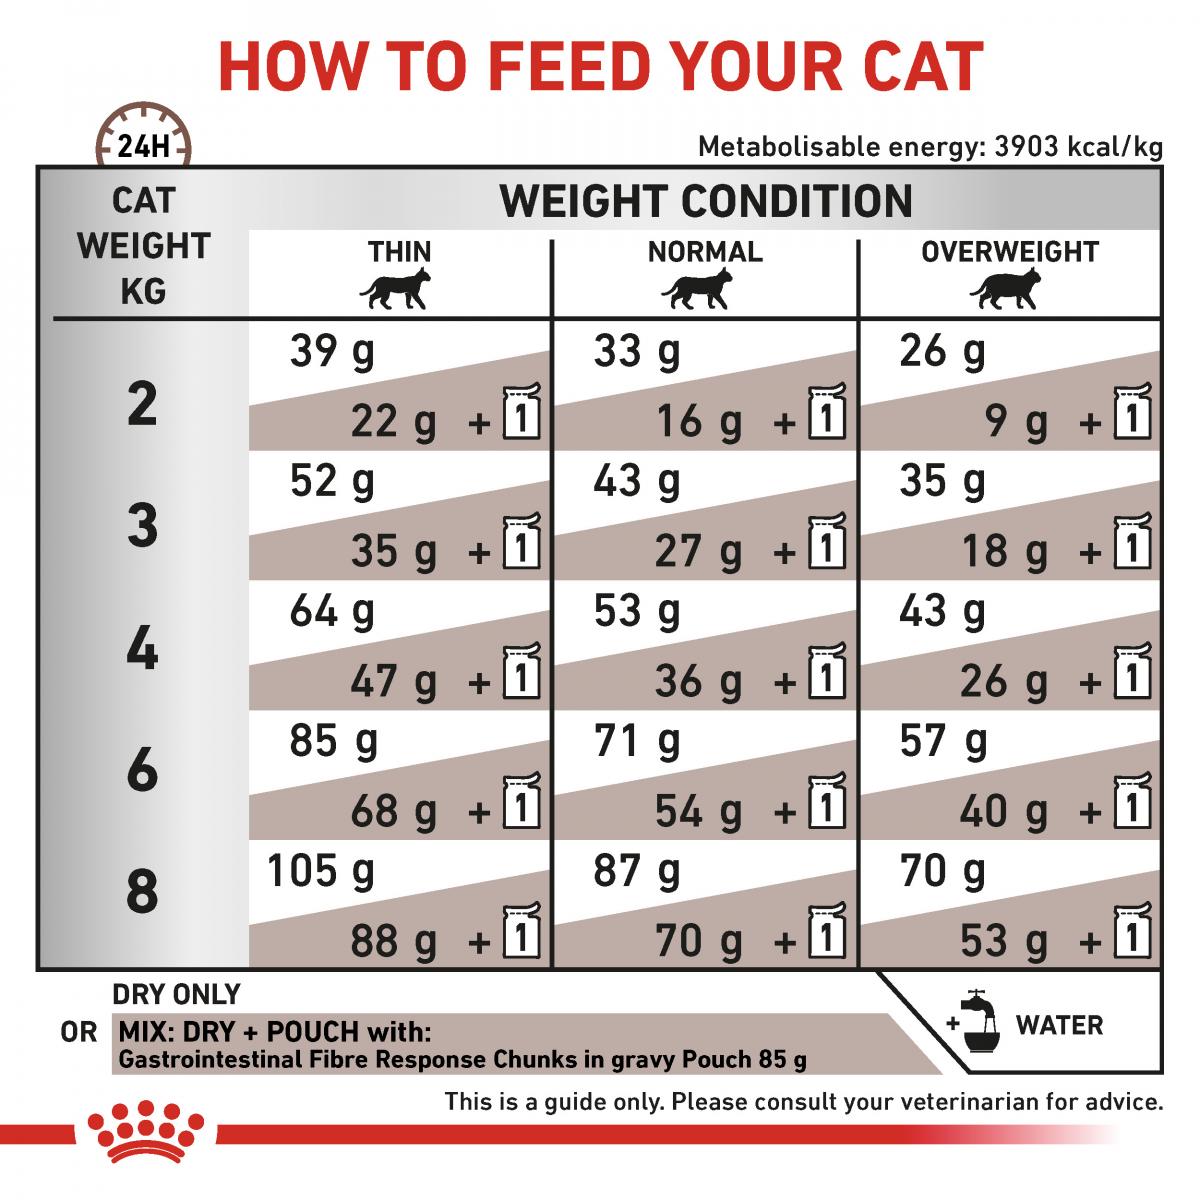 RC VHN CAT Gastrointestinal Fibre Response 2kg